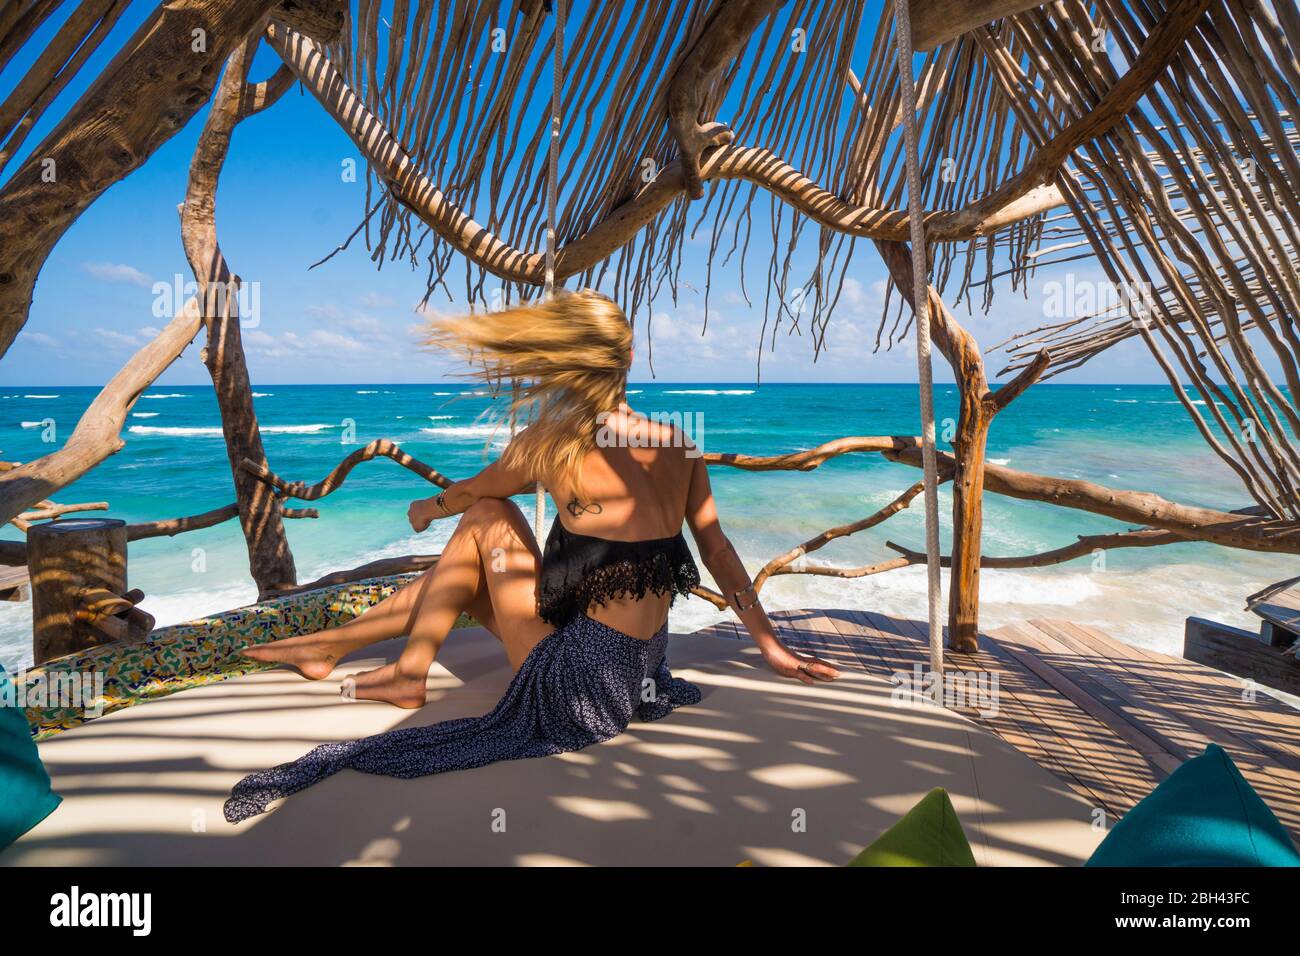 Capelli donna ondeggiante nel vento che si affaccia sull'oceano tropicale Foto Stock